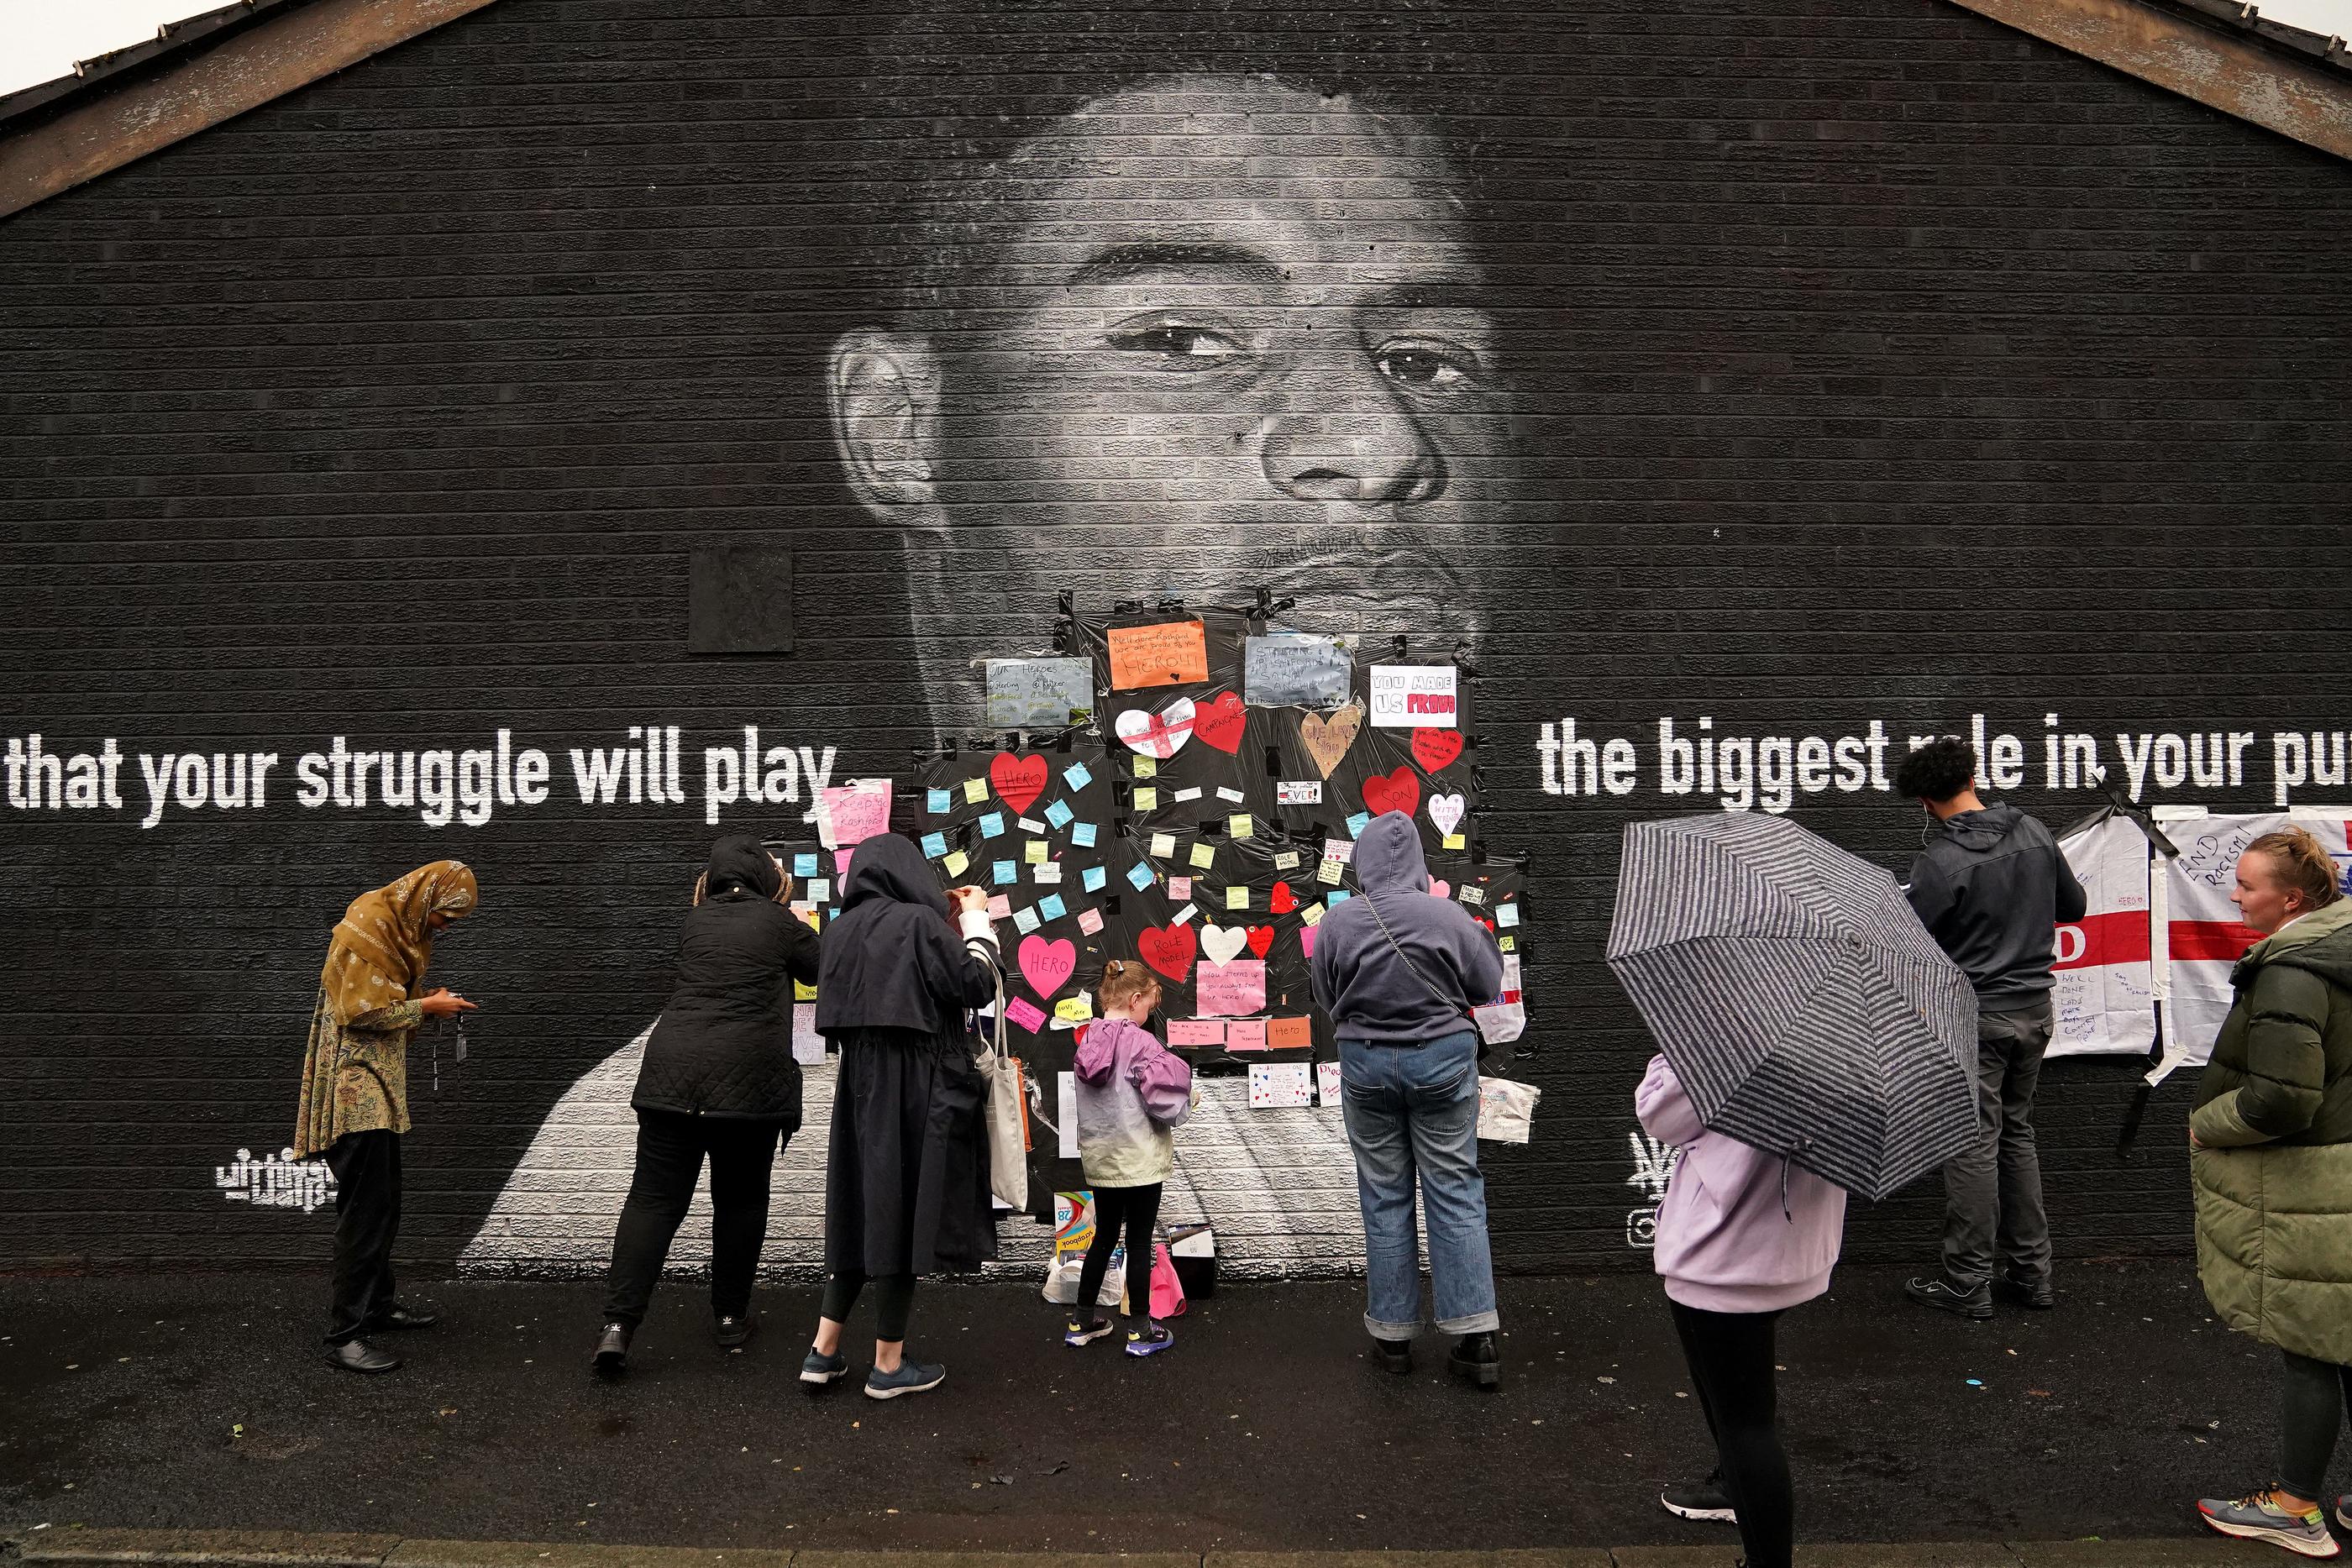 Des supporters collent des messages et des coeurs sur la fresque de Marcus Rashford vandalisée à Manchester.